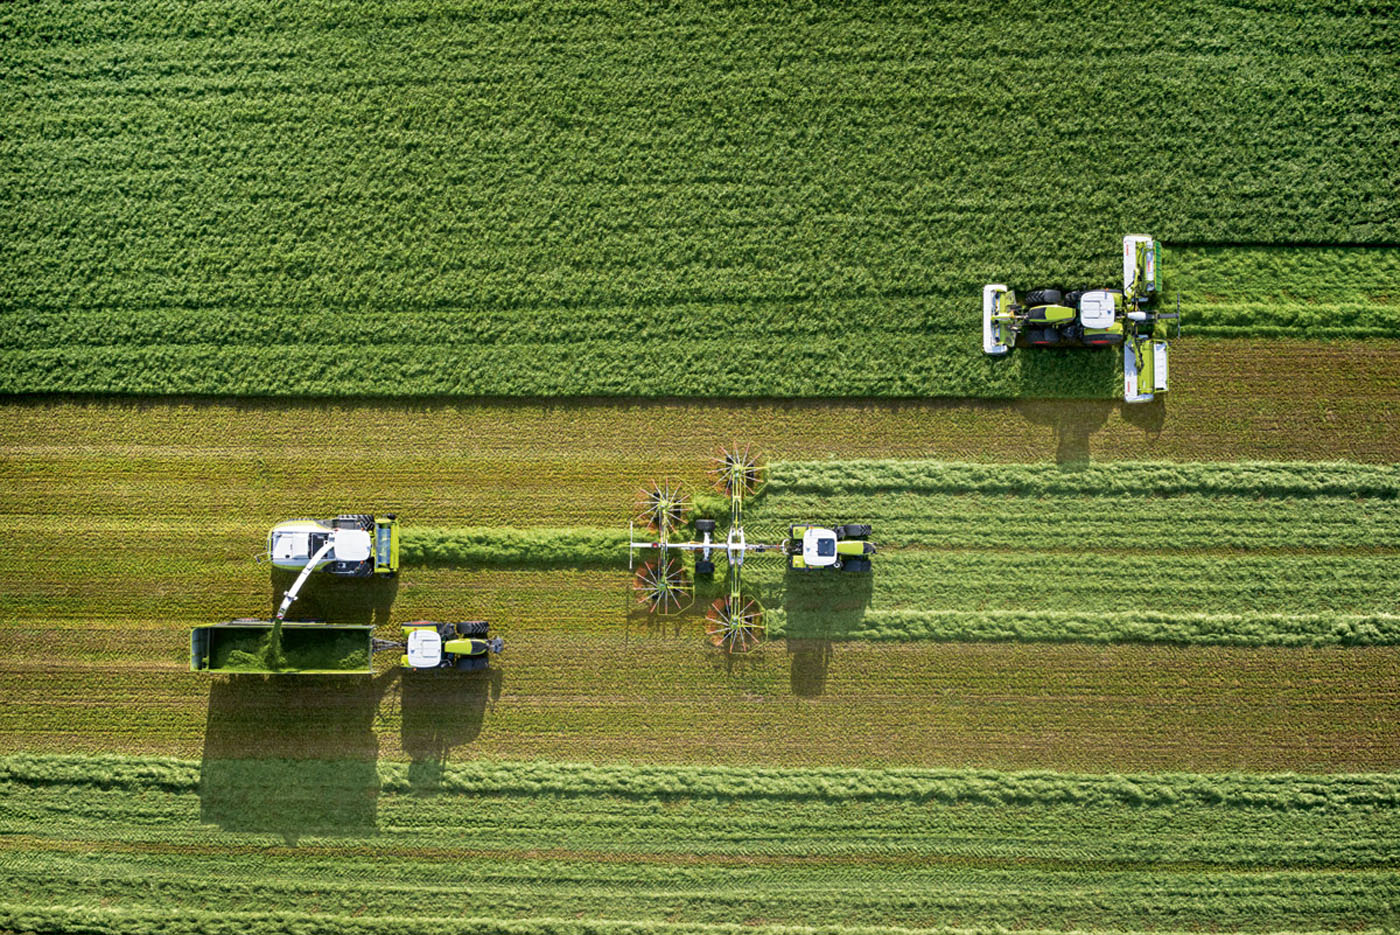 Corporate Fotografie: Airshot - Luftaufnahme für CLAAS Landmaschinen - Arbeitsprozesse aud dem Feld © Corporate Industriefotograf Thorsten Schmidtkord Düsseldorf